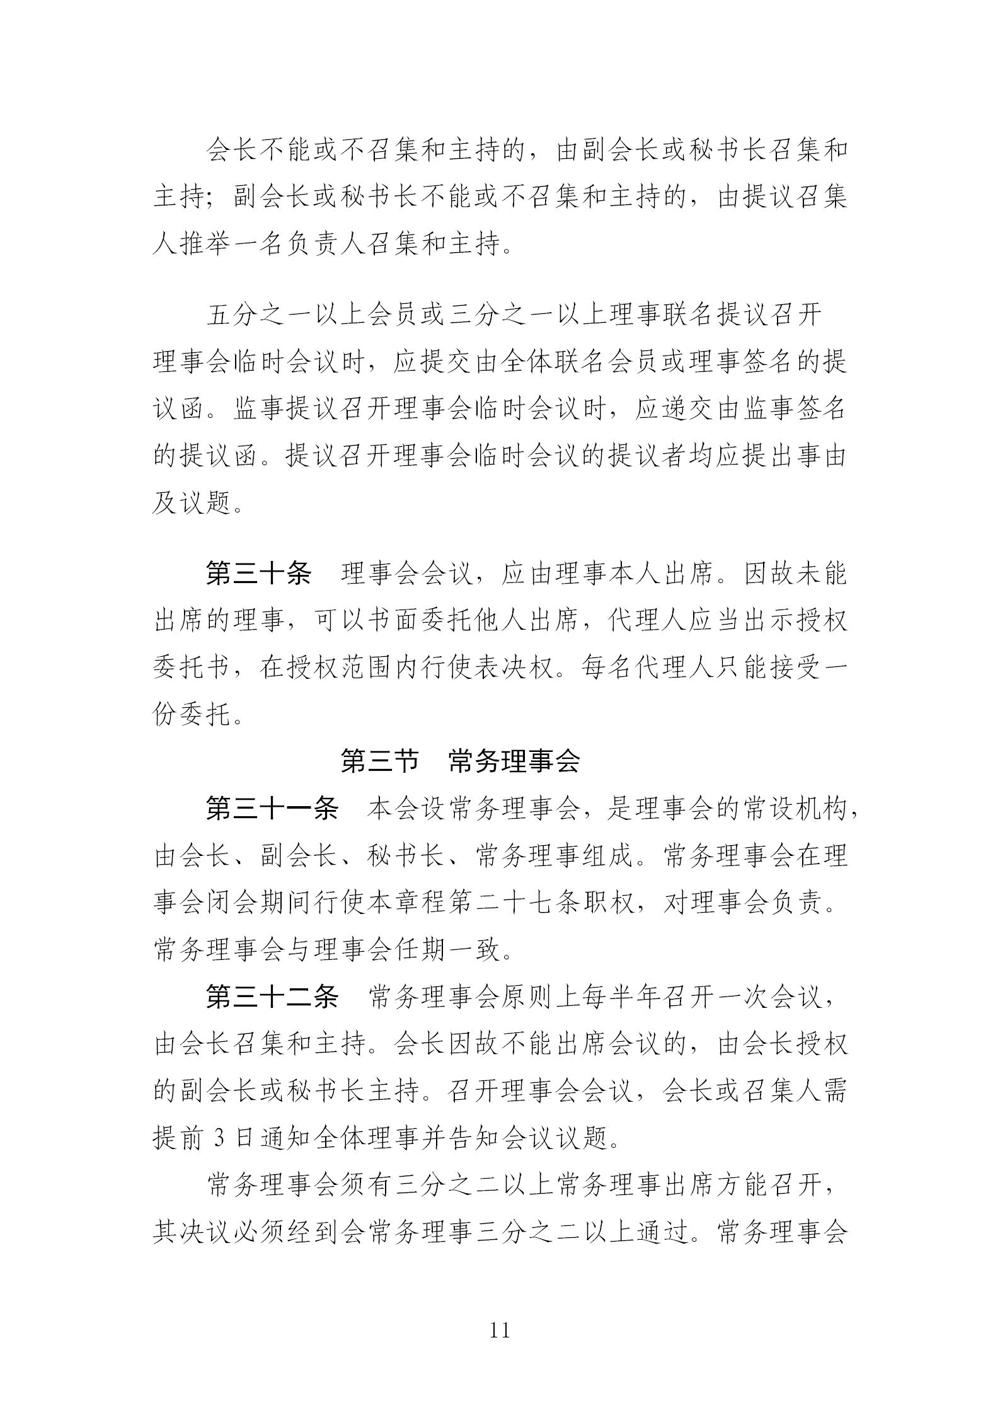 3-广东省羽毛球协会新章程20221107-根据民政厅修改意见修改_11